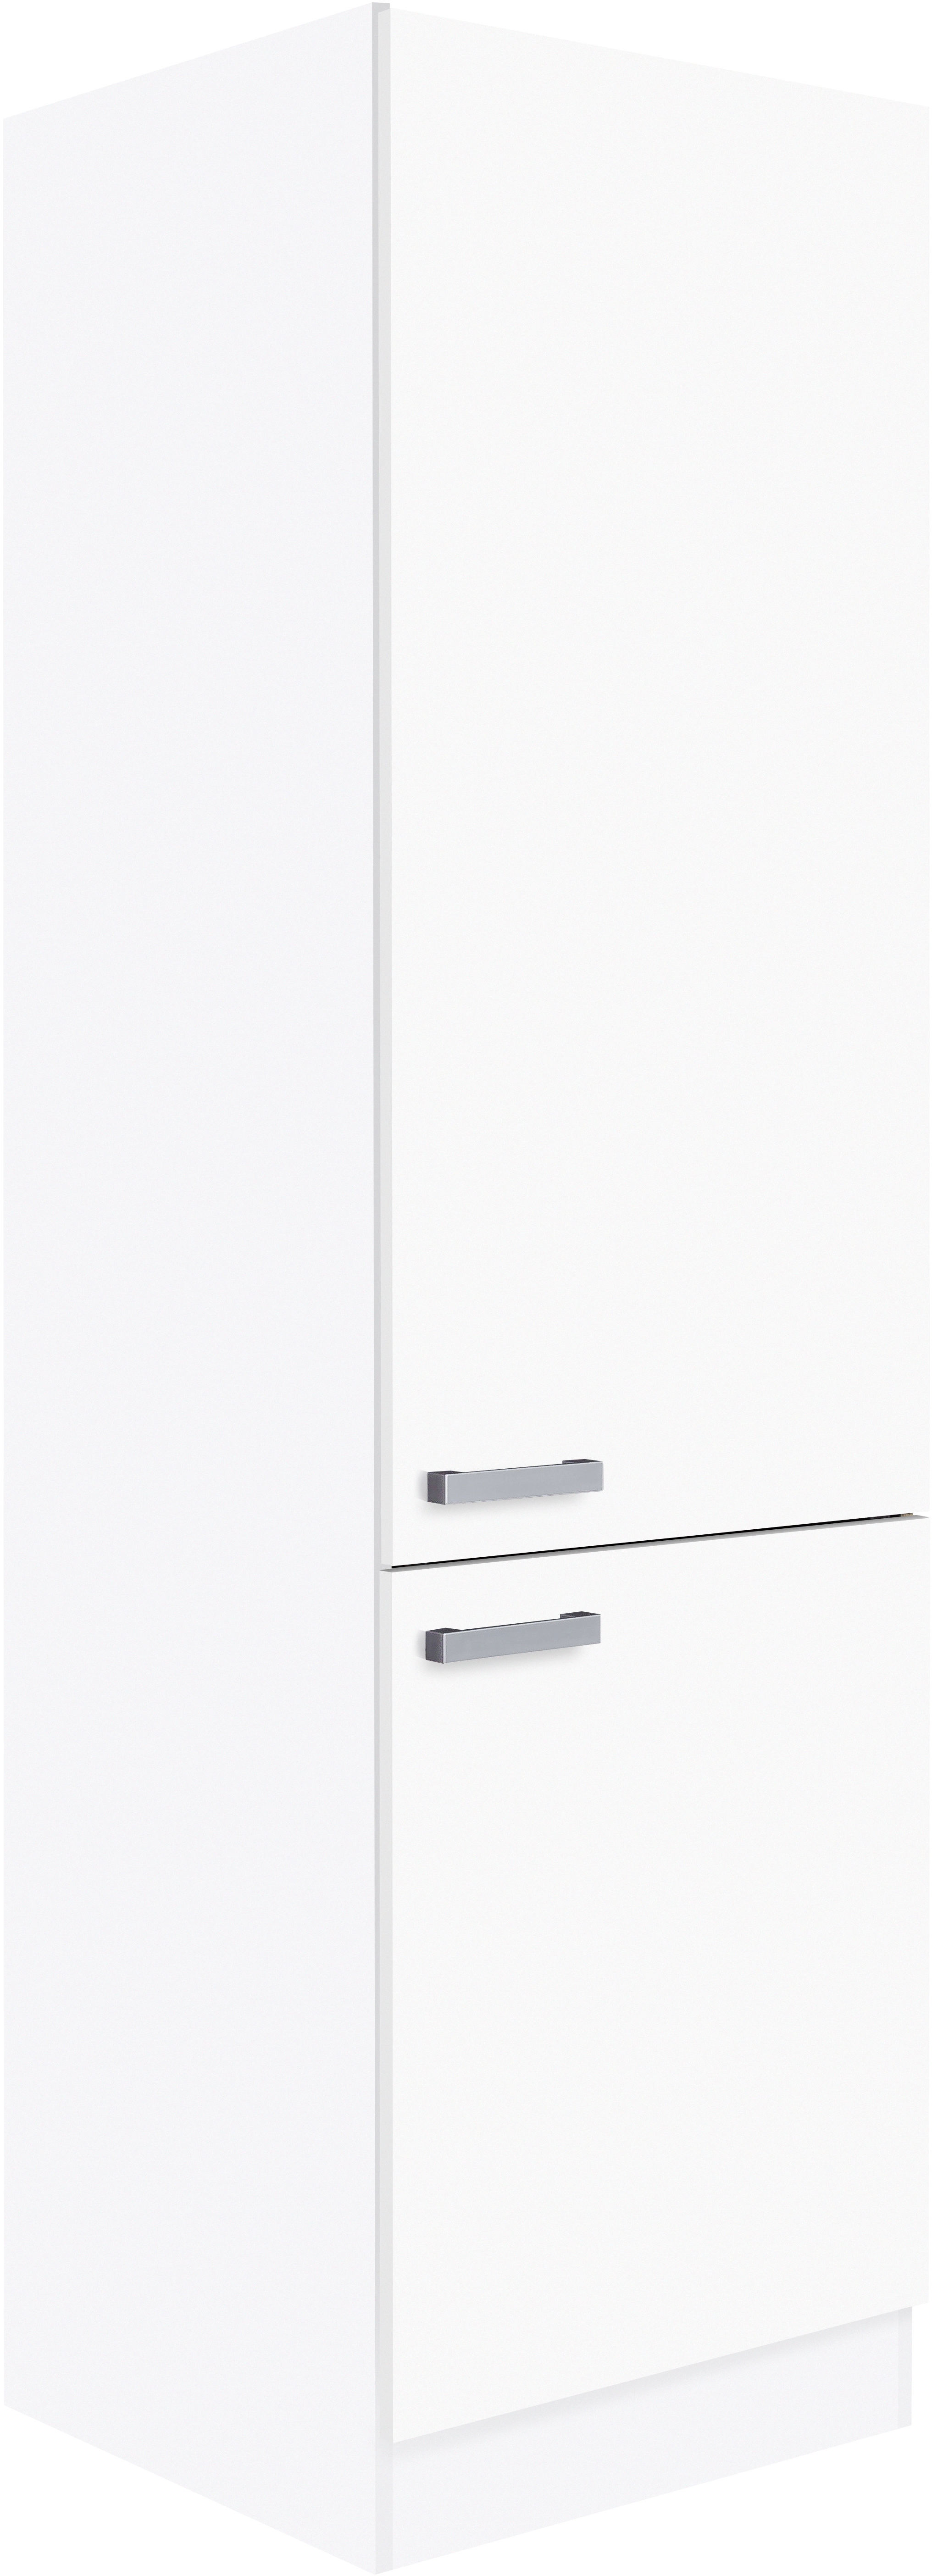 Optifit Hochschrank mit Garderobe Salo214 60 cm x 206,8 cm x 57,1 cm Weiß  kaufen bei OBI | Apothekerschränke